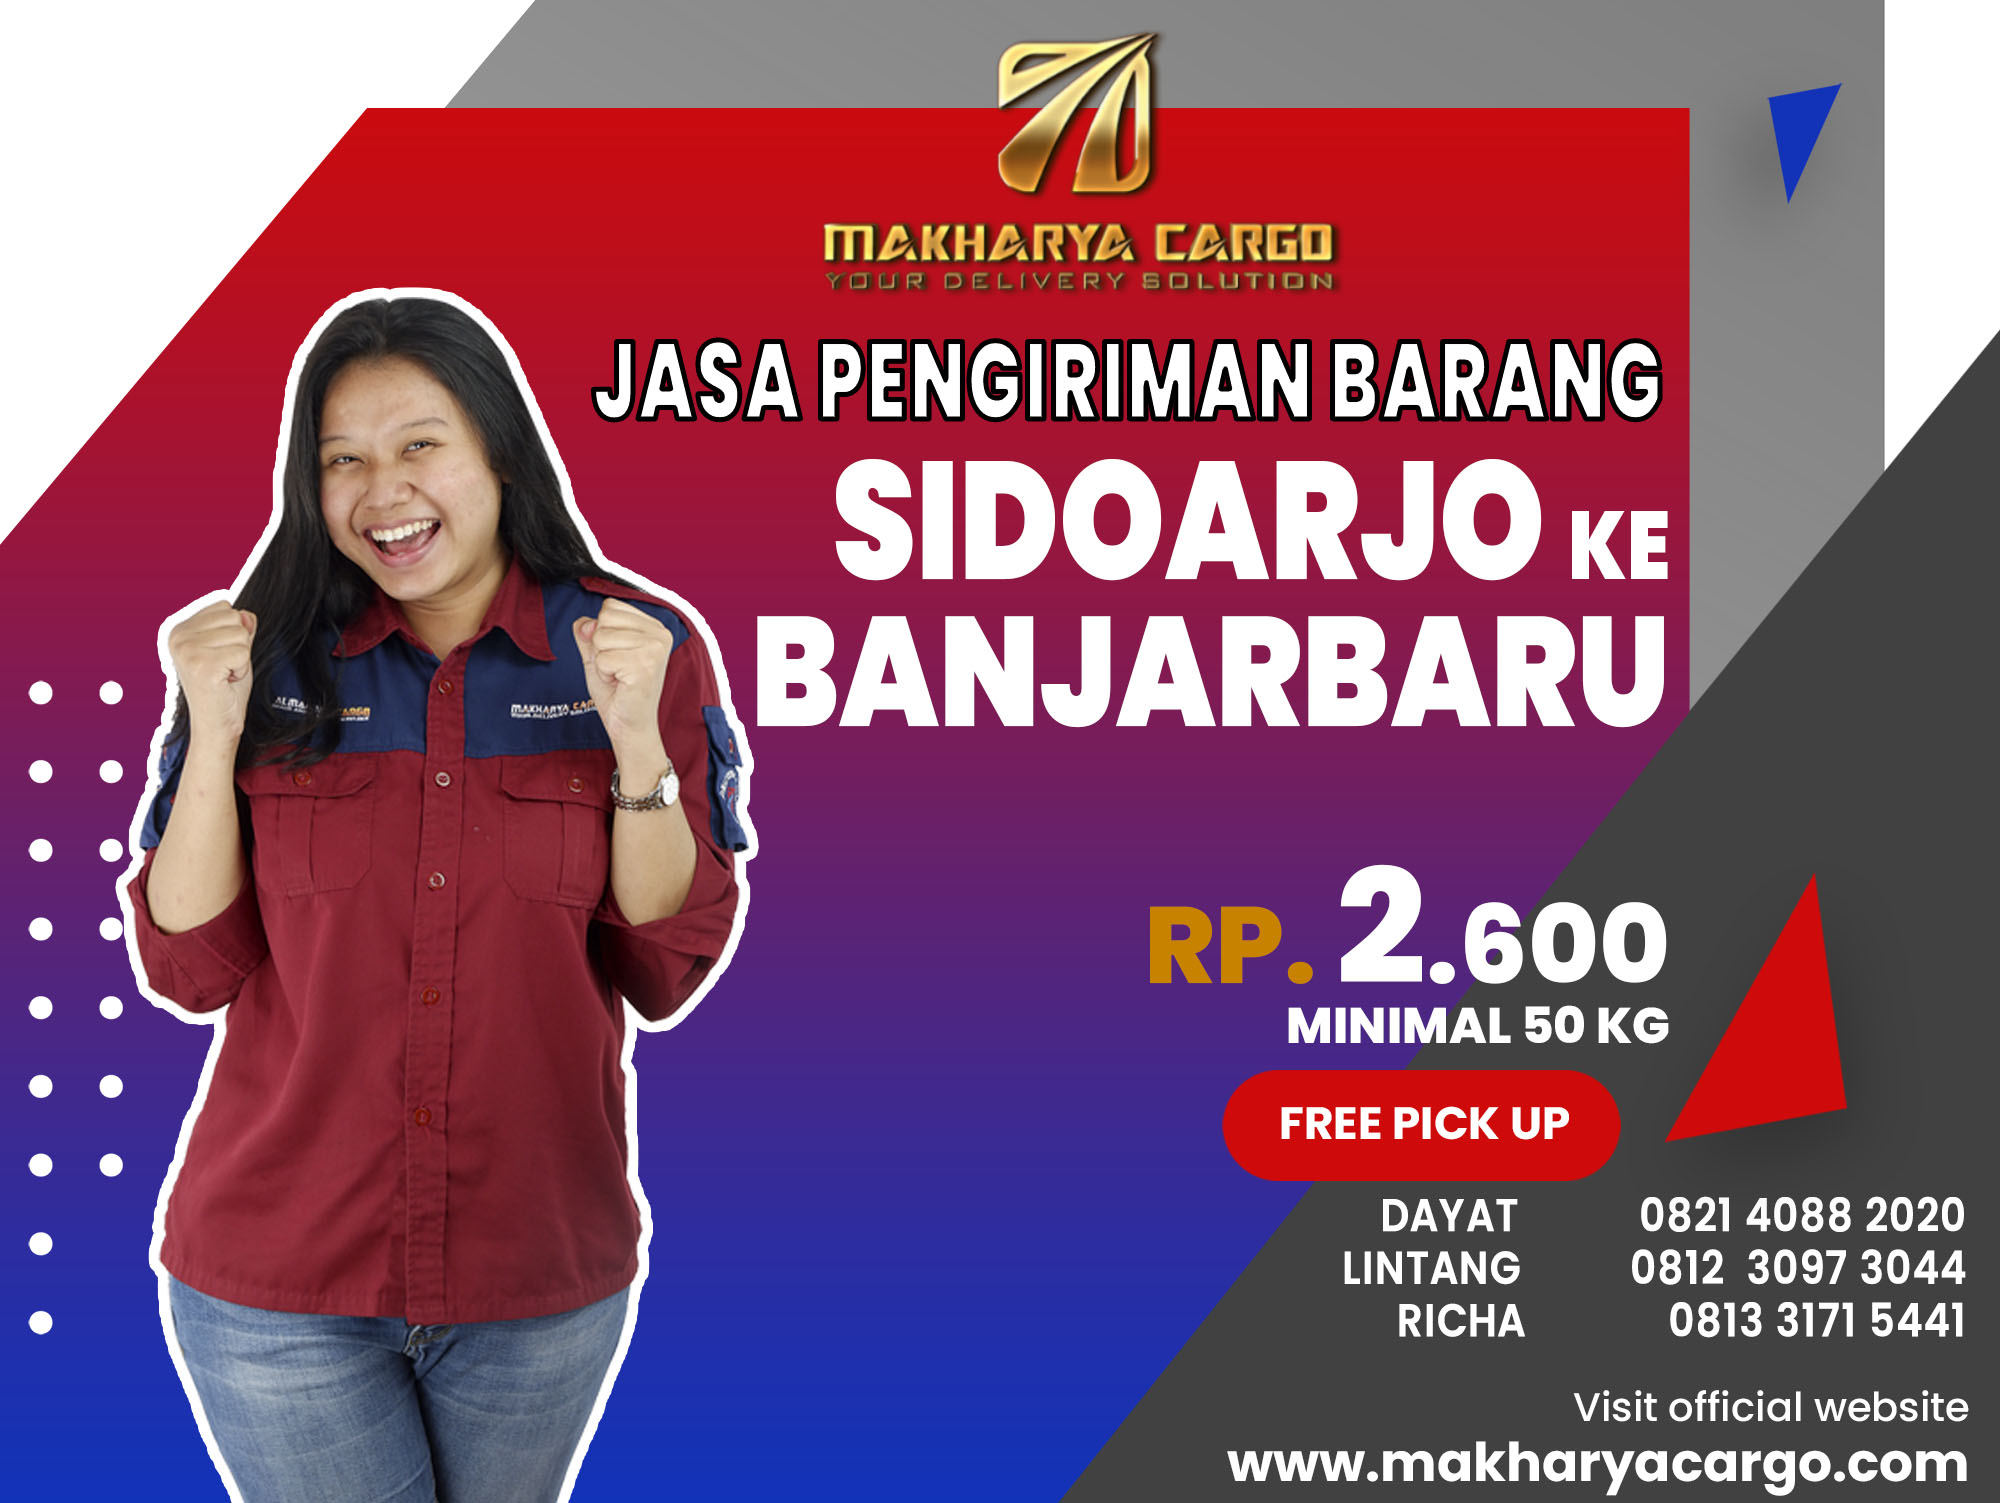 Jasa Pengiriman Barang Sidoarjo Banjarbaru